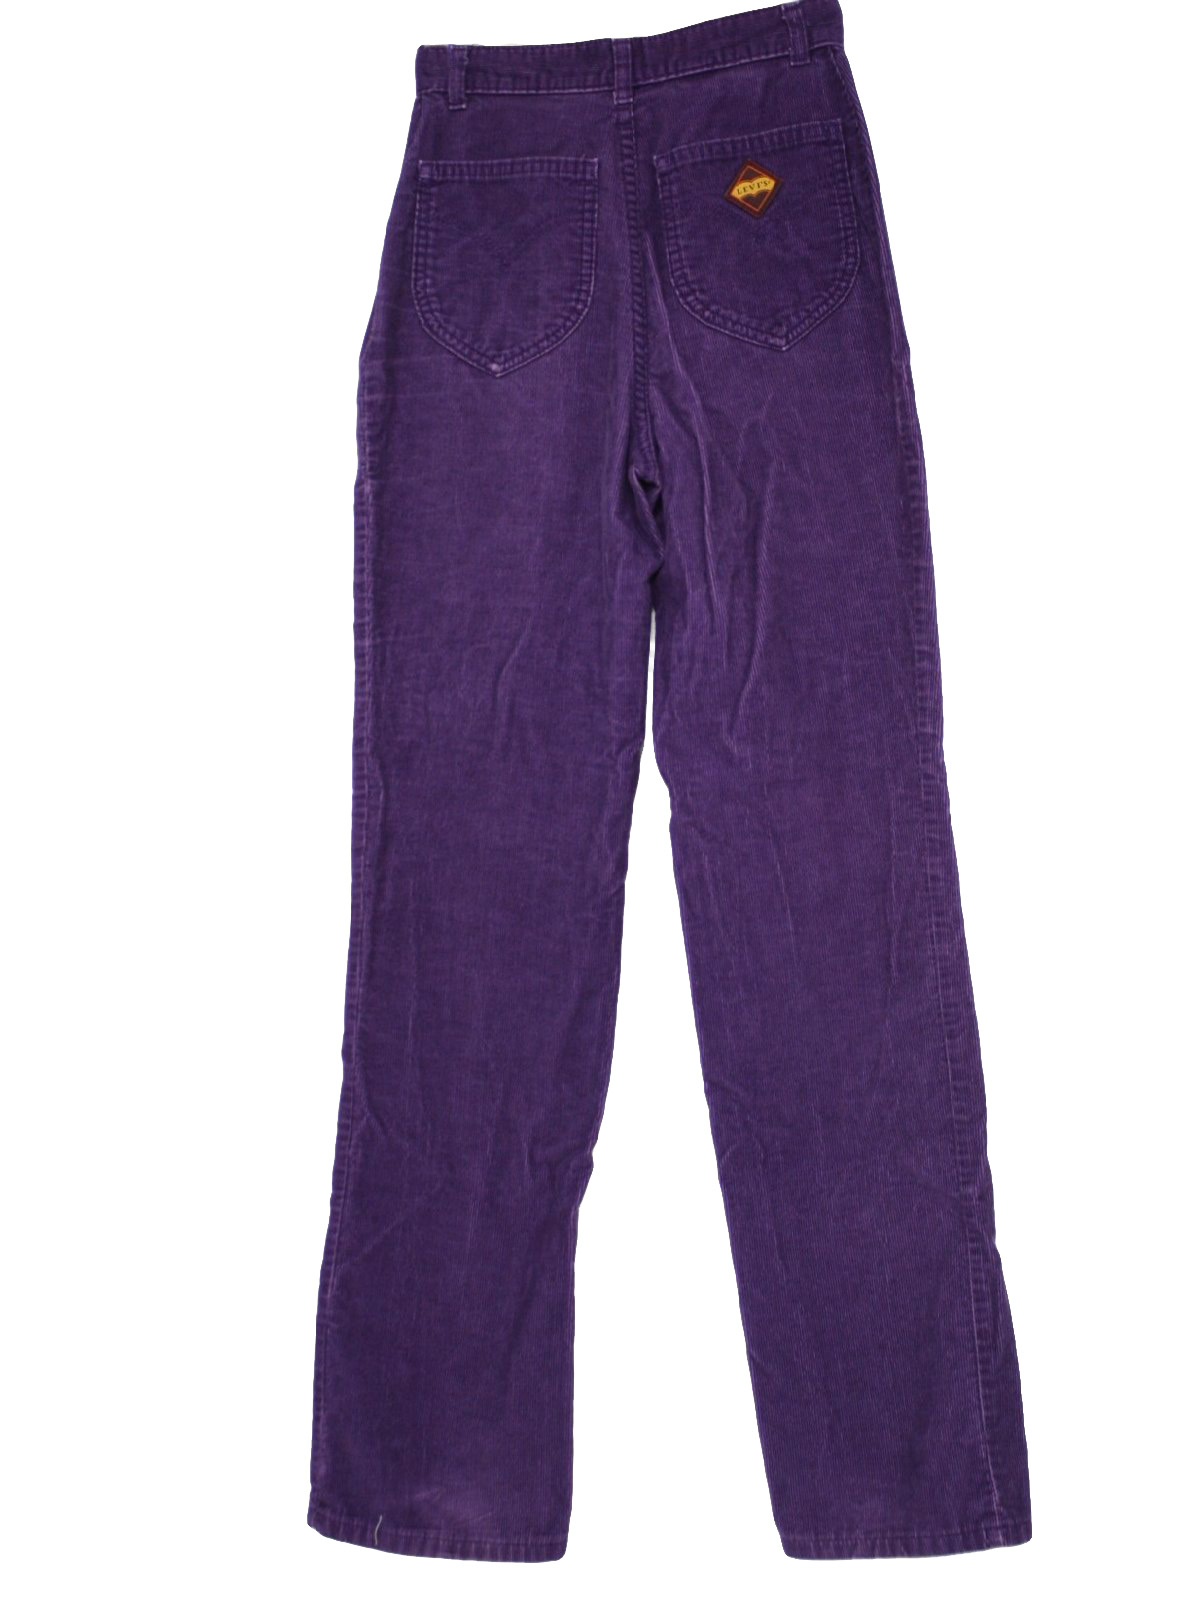 Vintage Levis Eighties Pants: 80s -Levis- Womens purple cotton corduroy ...